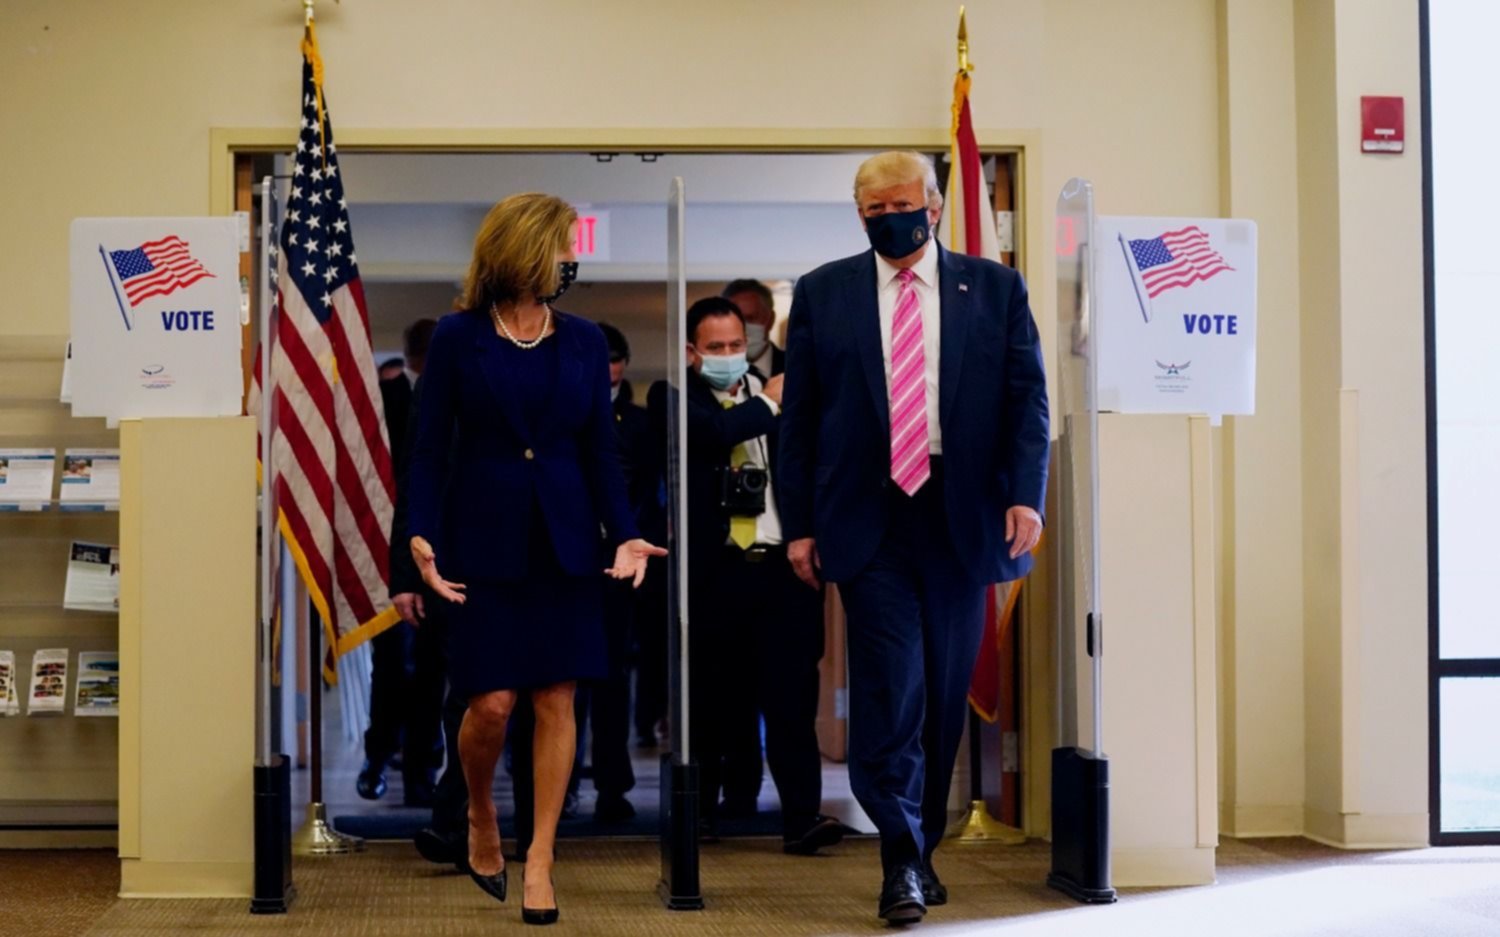 El presidente de EEUU sufragó por anticipado en Florida: "Voté por un tipo llamado Trump"